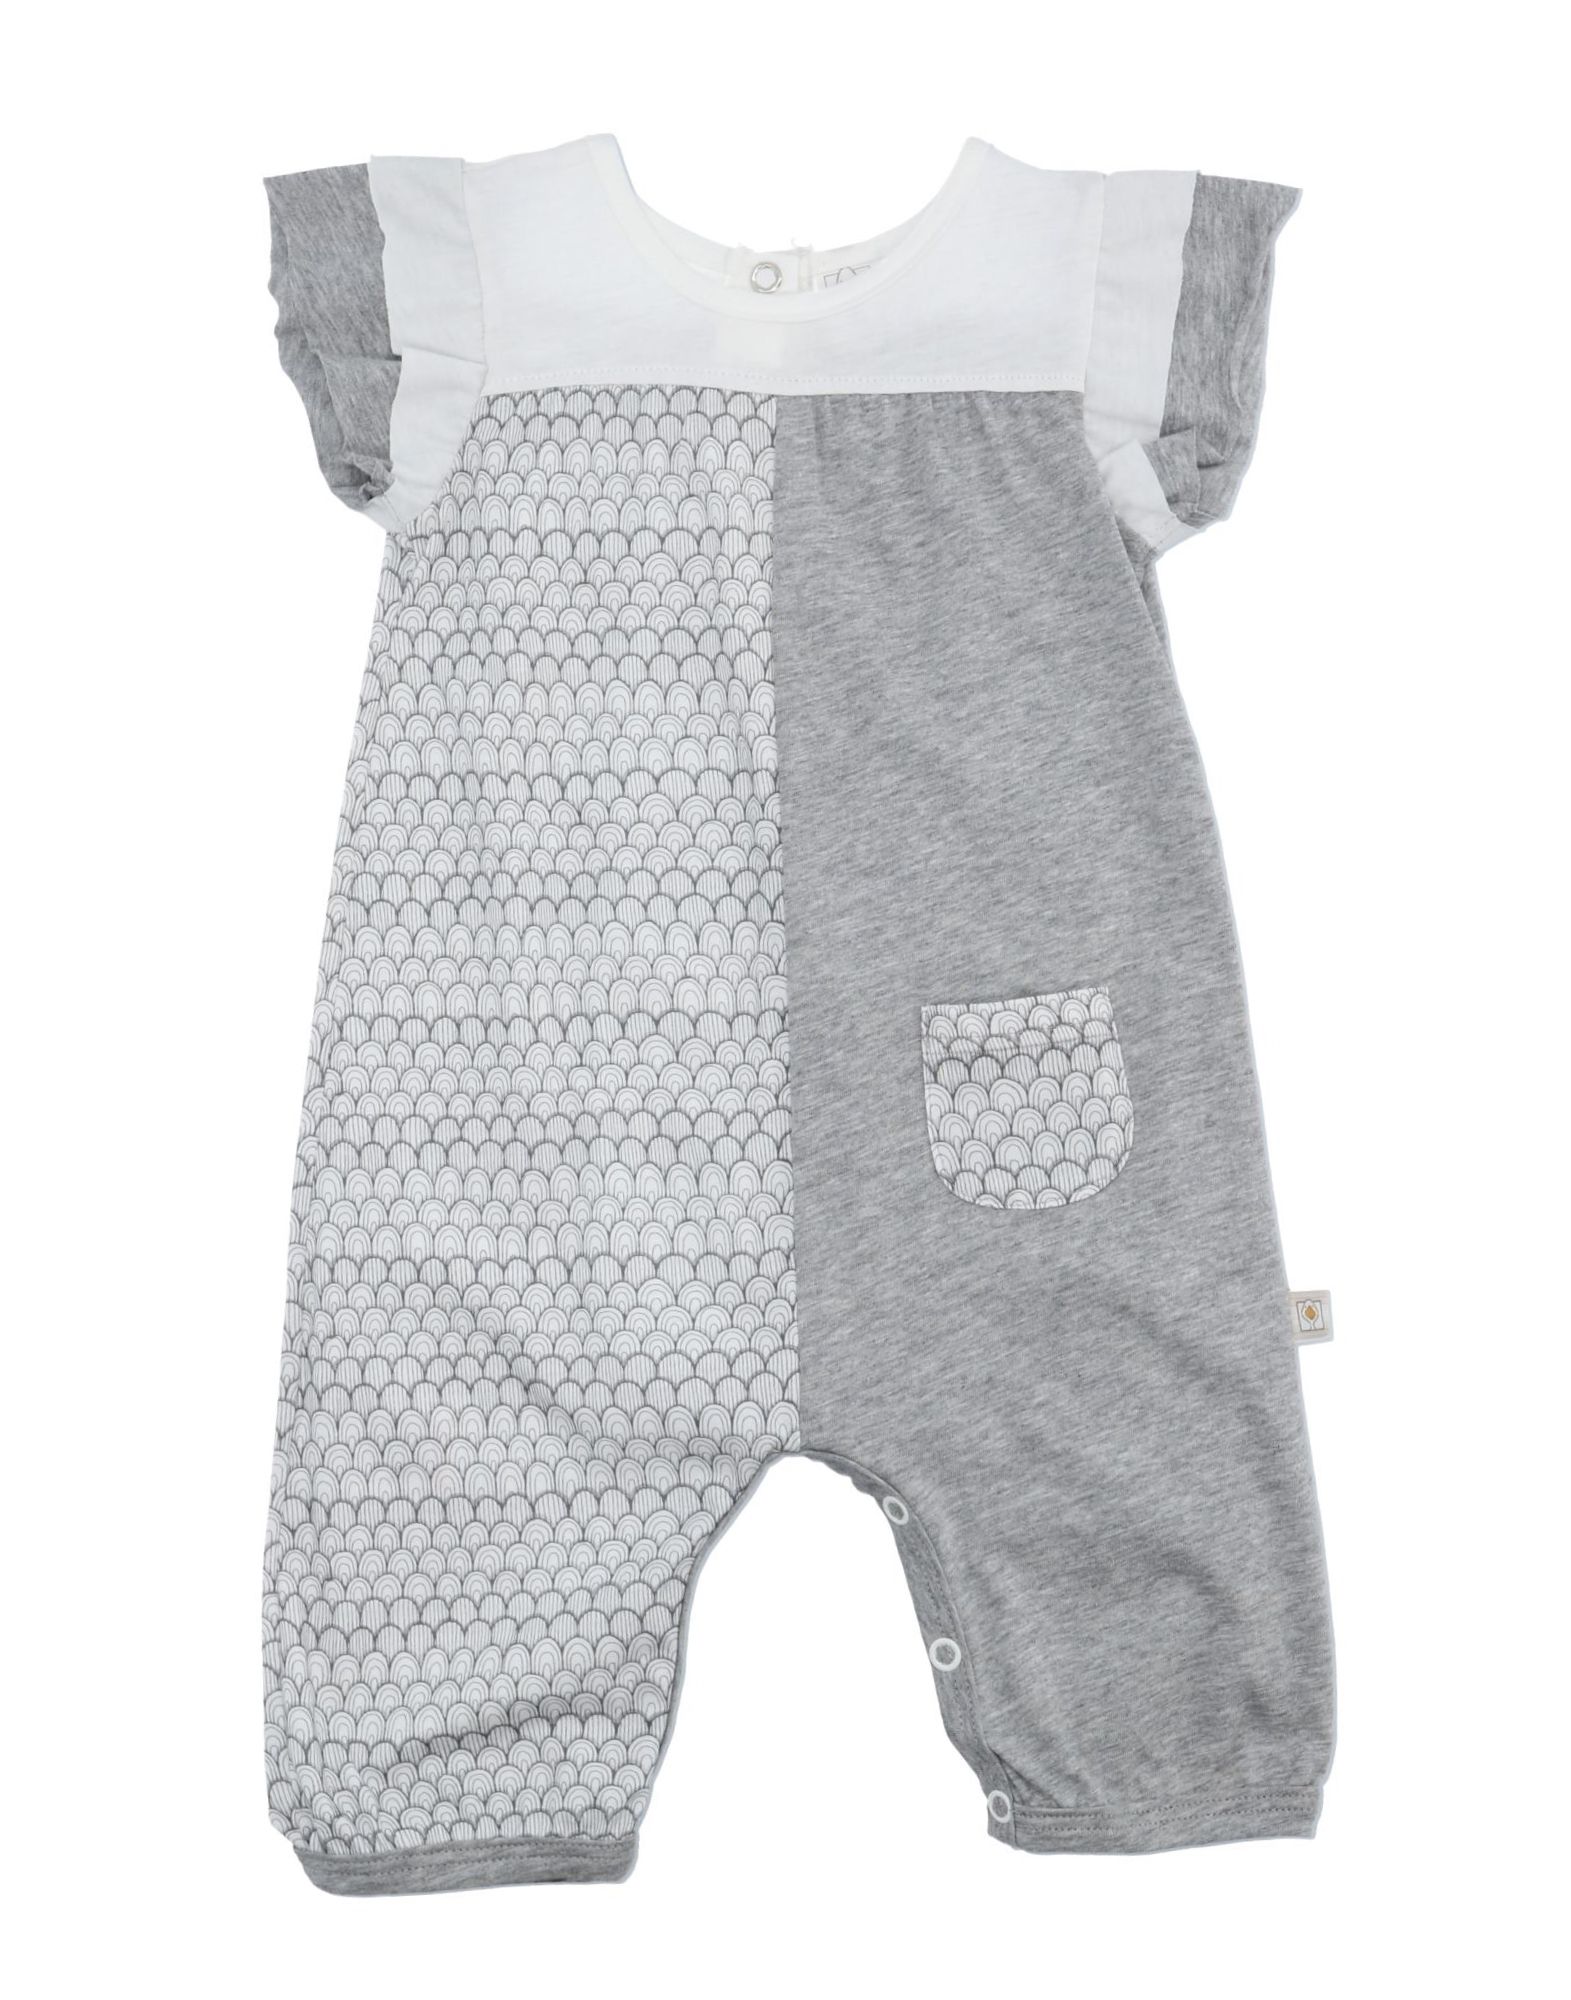 Filobio Kids' Baby Overalls In Grey